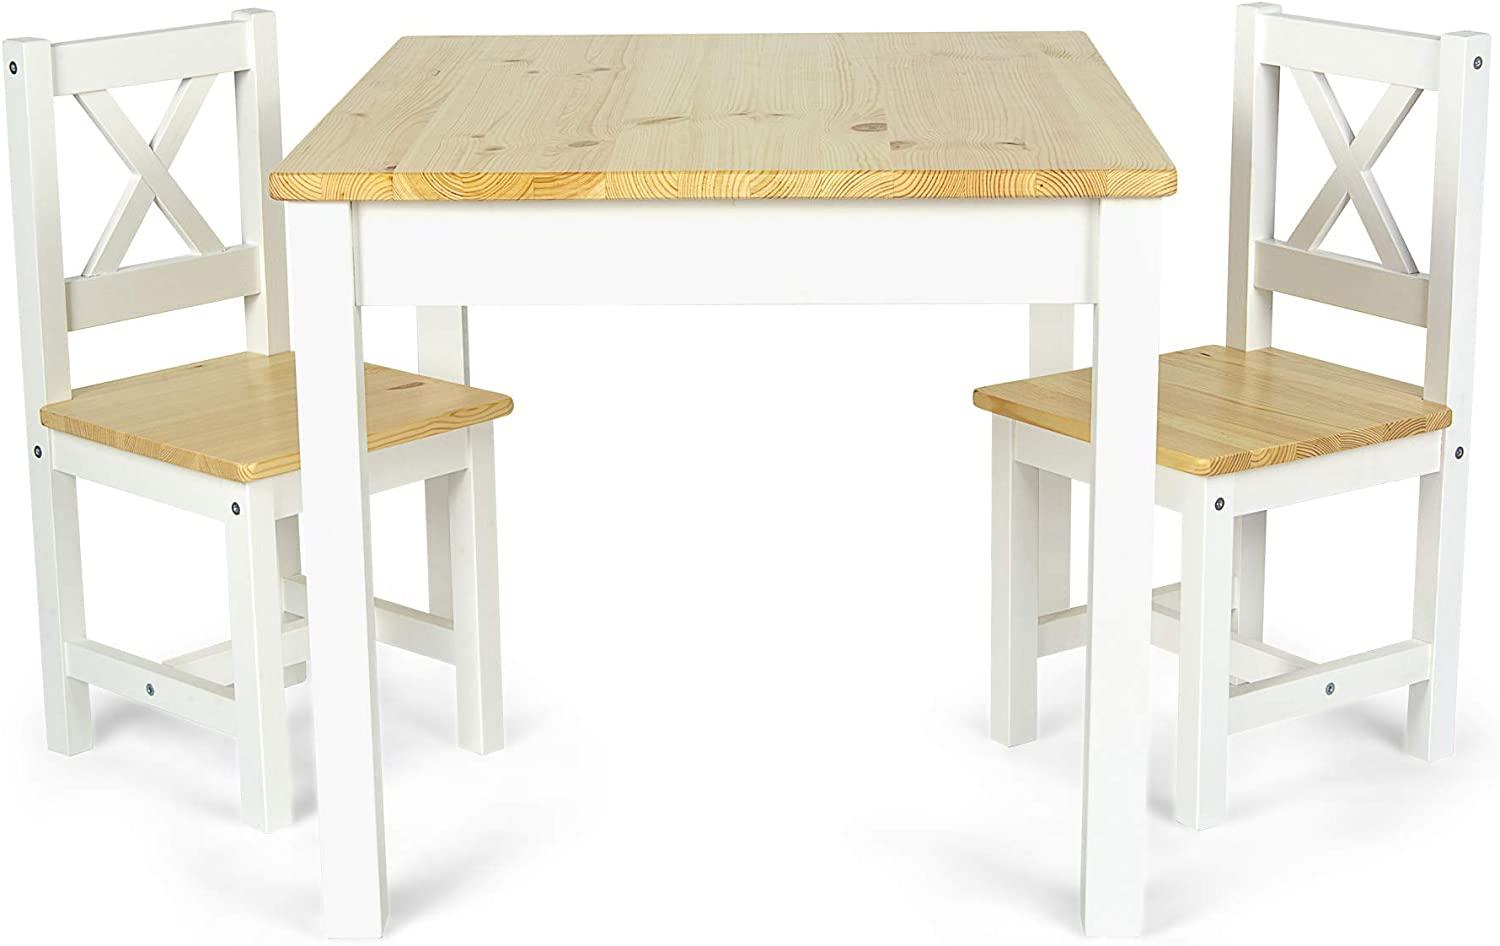 Holztisch für Kinder - POLA - Kindertisch und 2 Stühle im skandinavischen Stil (Weiß/Kiefer) Bild 1